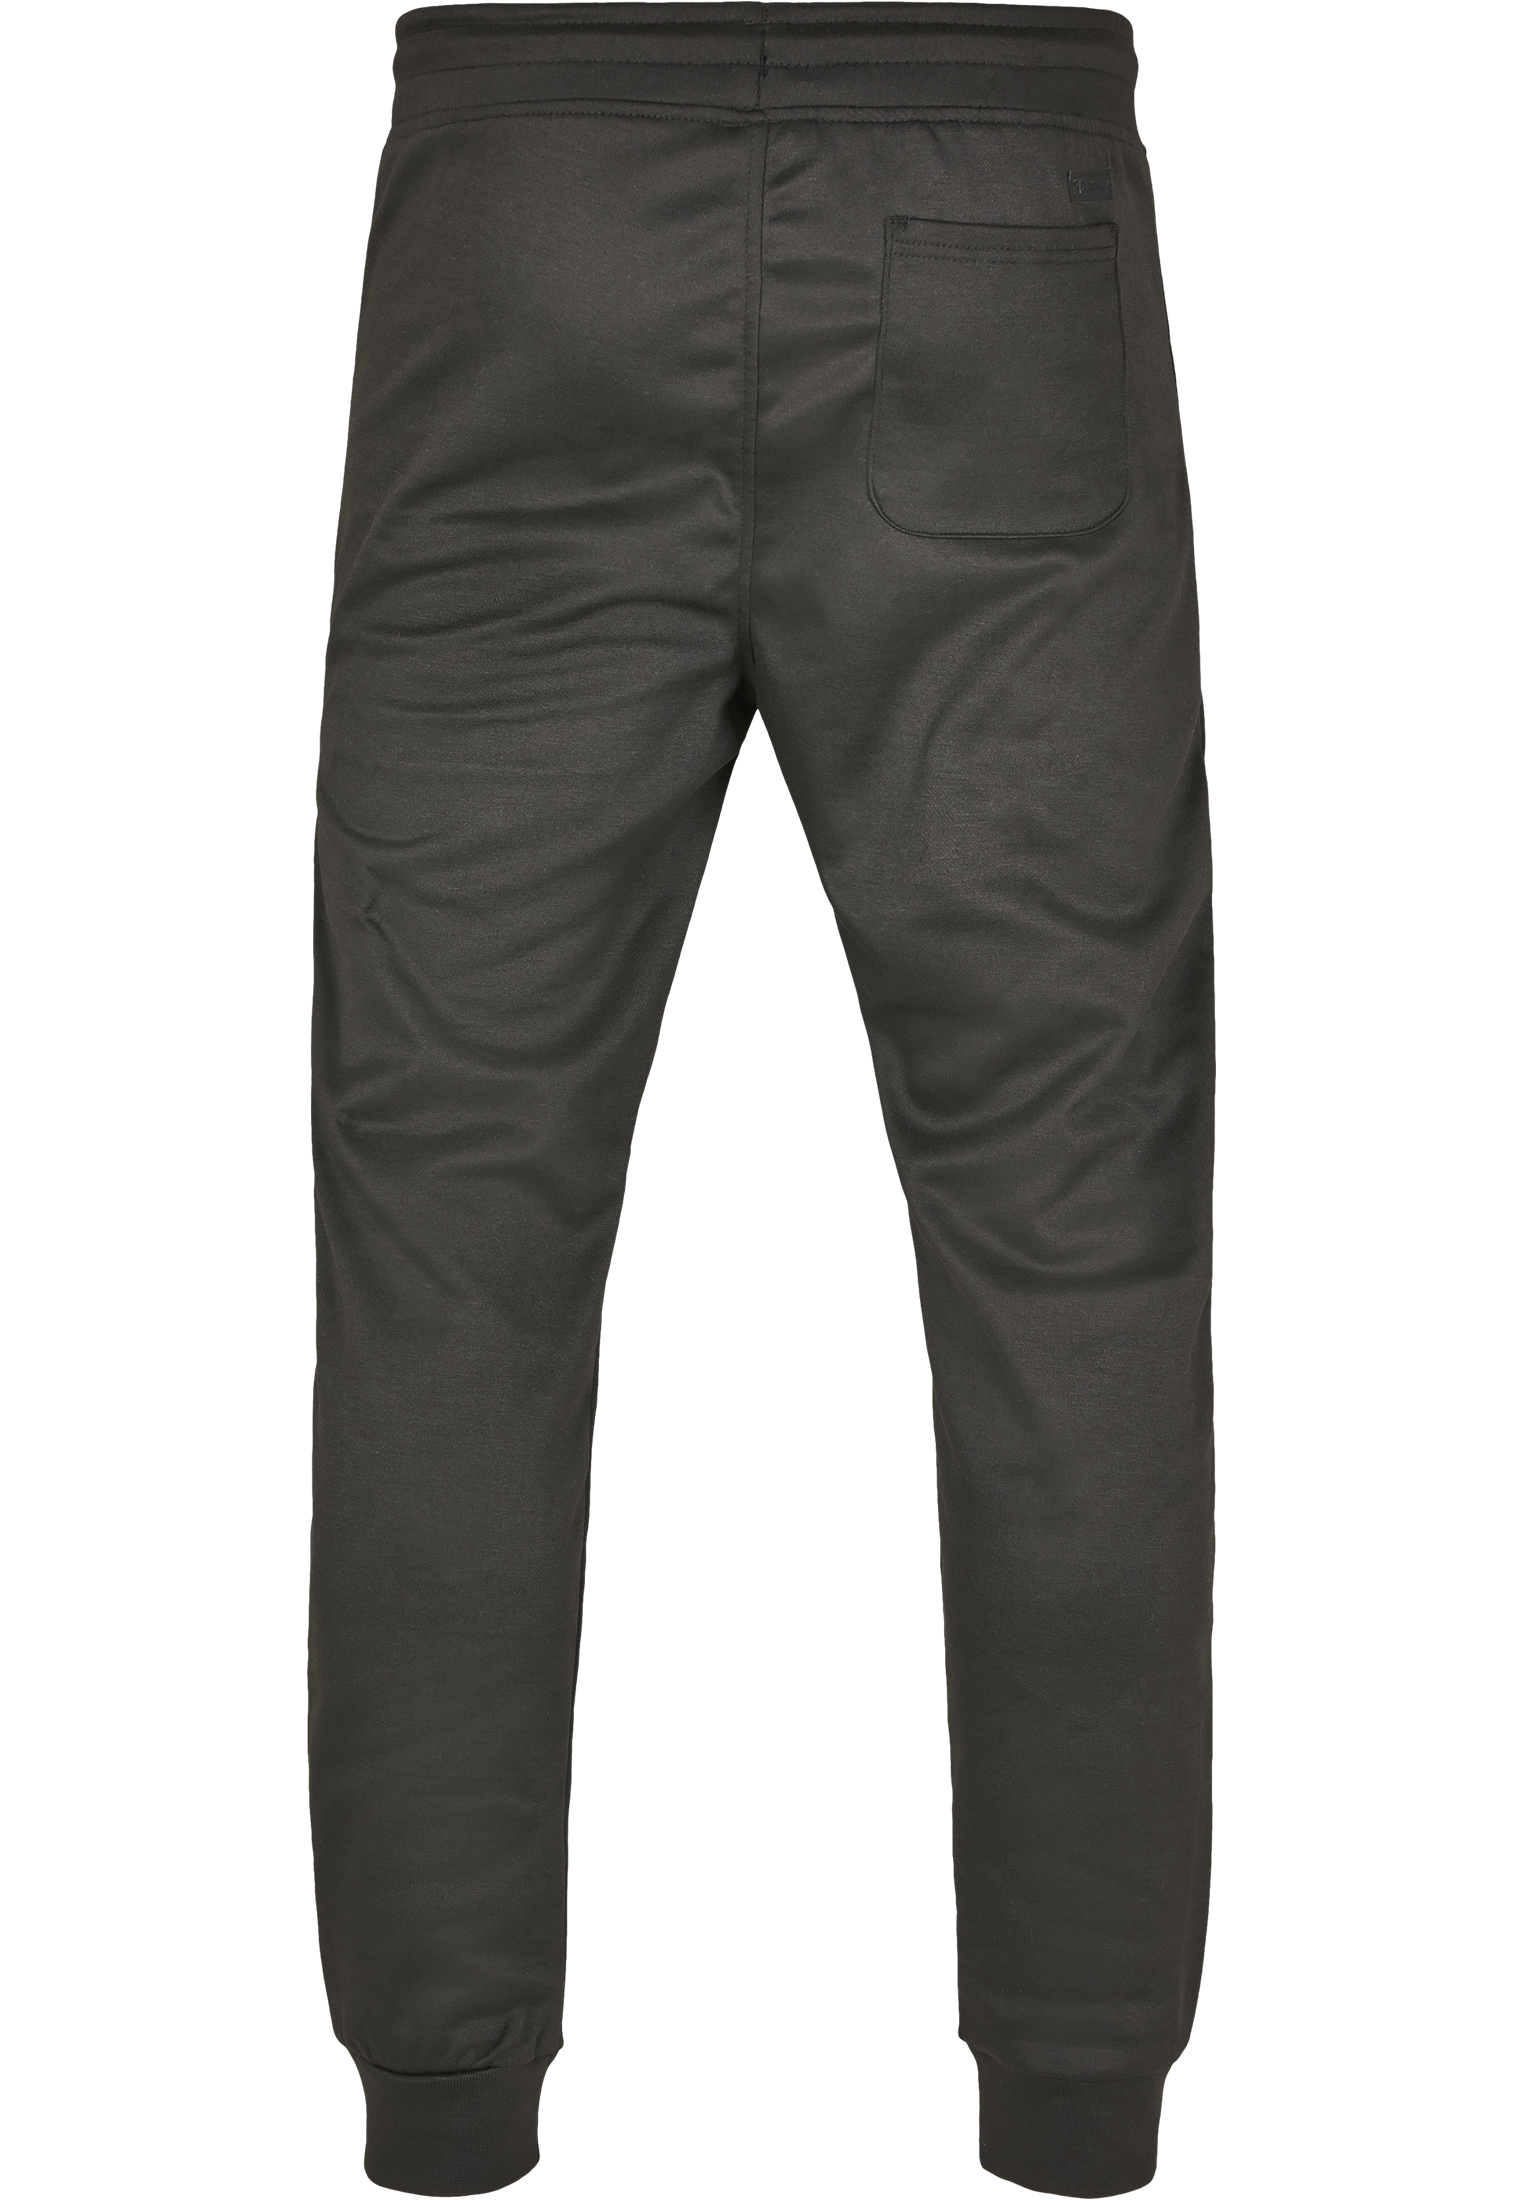 Nos Kollektion Basic Tech Fleece Jogger in Farbe black